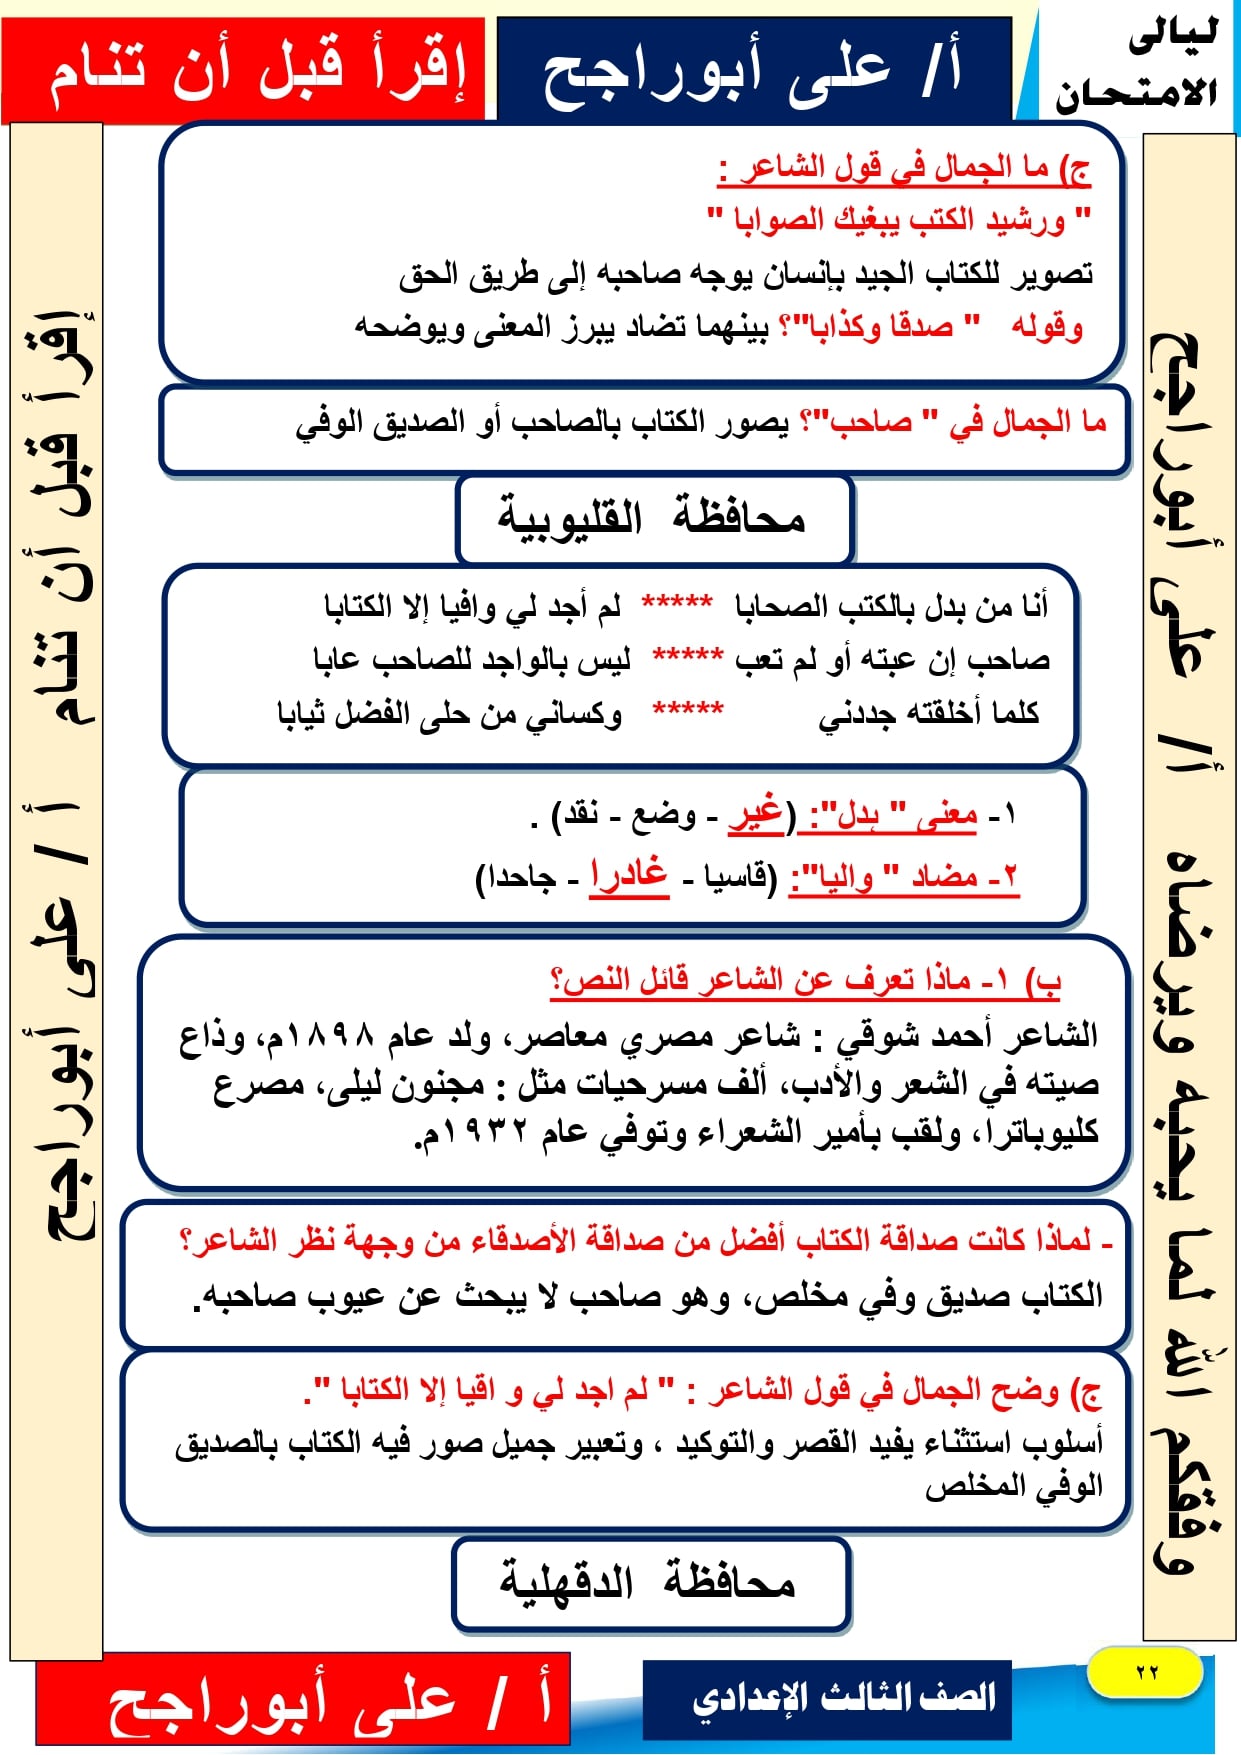 حمل الان بالاجابات مذكرة اللغة العربية للصف الثالث الاعدادي الترم الاول